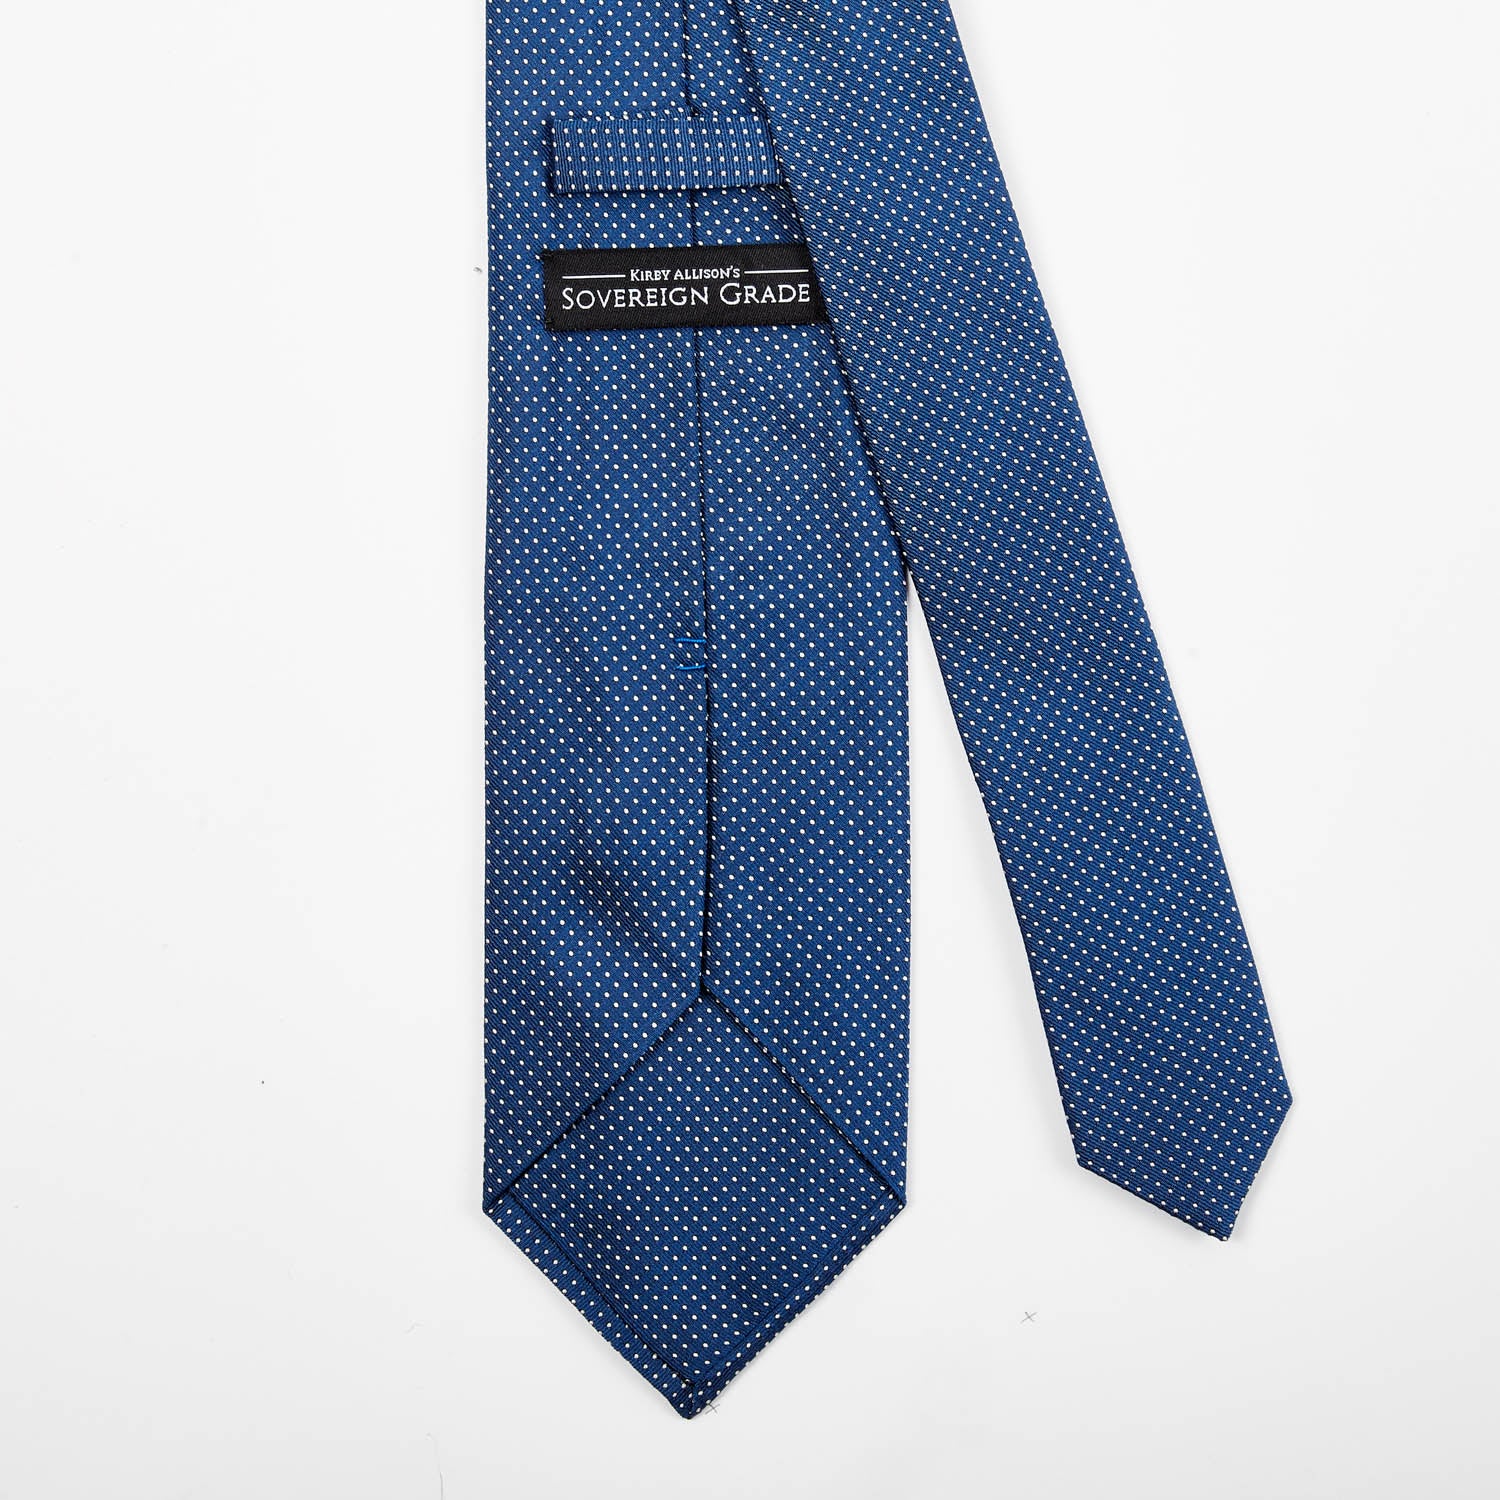 Sovereign Grade Blue Silk Micro Dot Tie